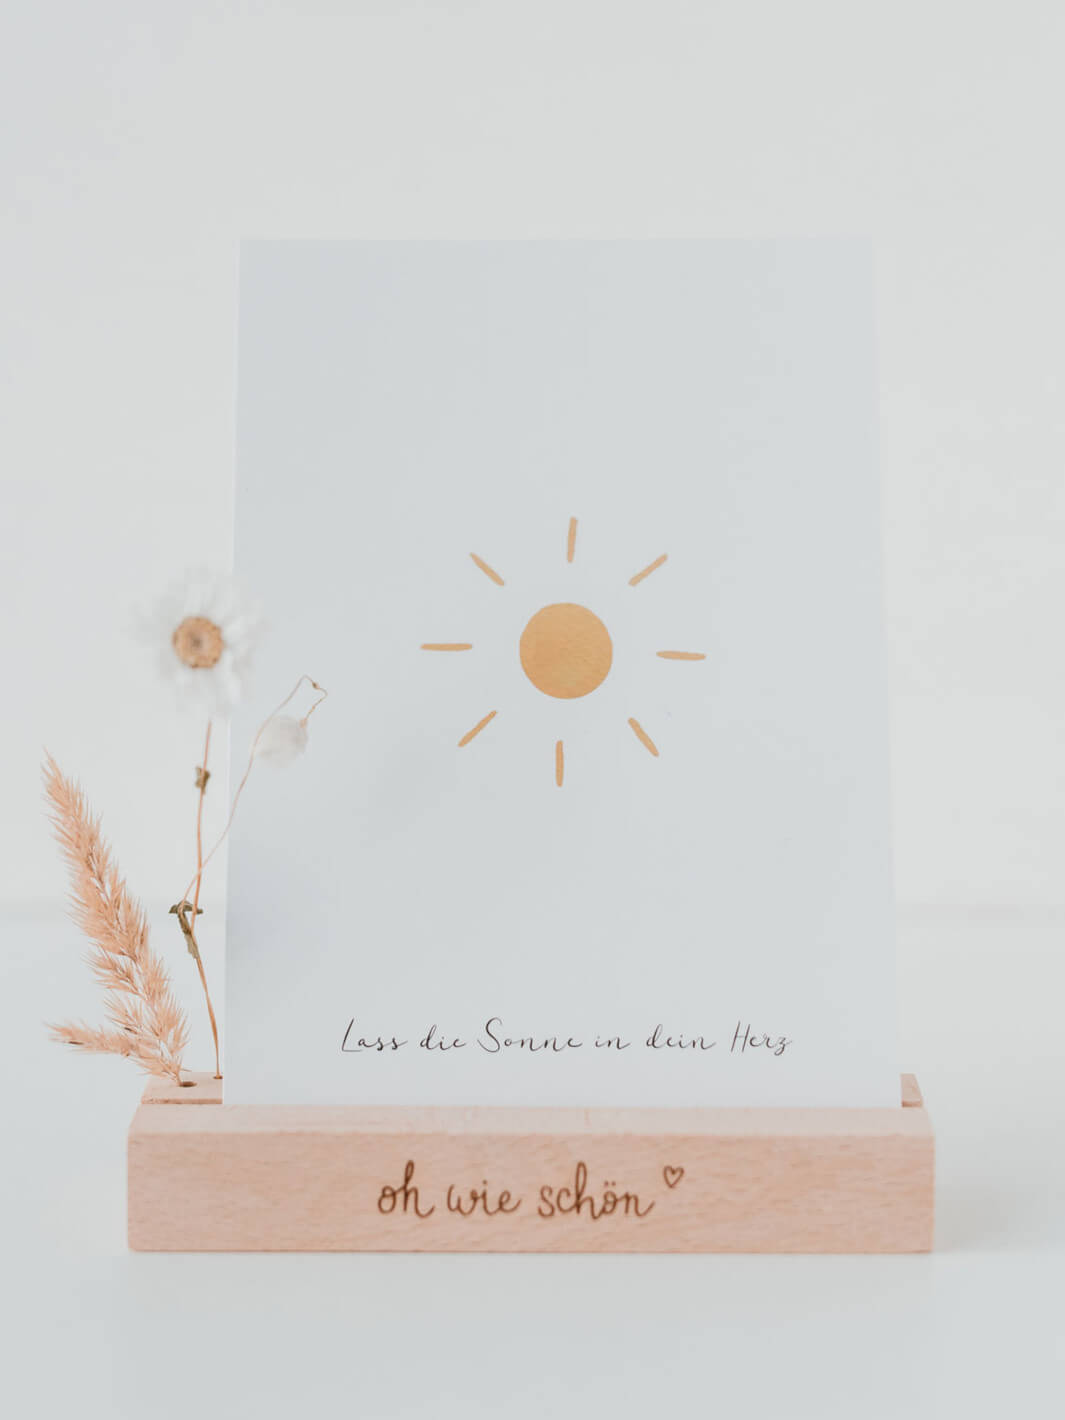 Lass die Sonne in dein Herz Postkarte